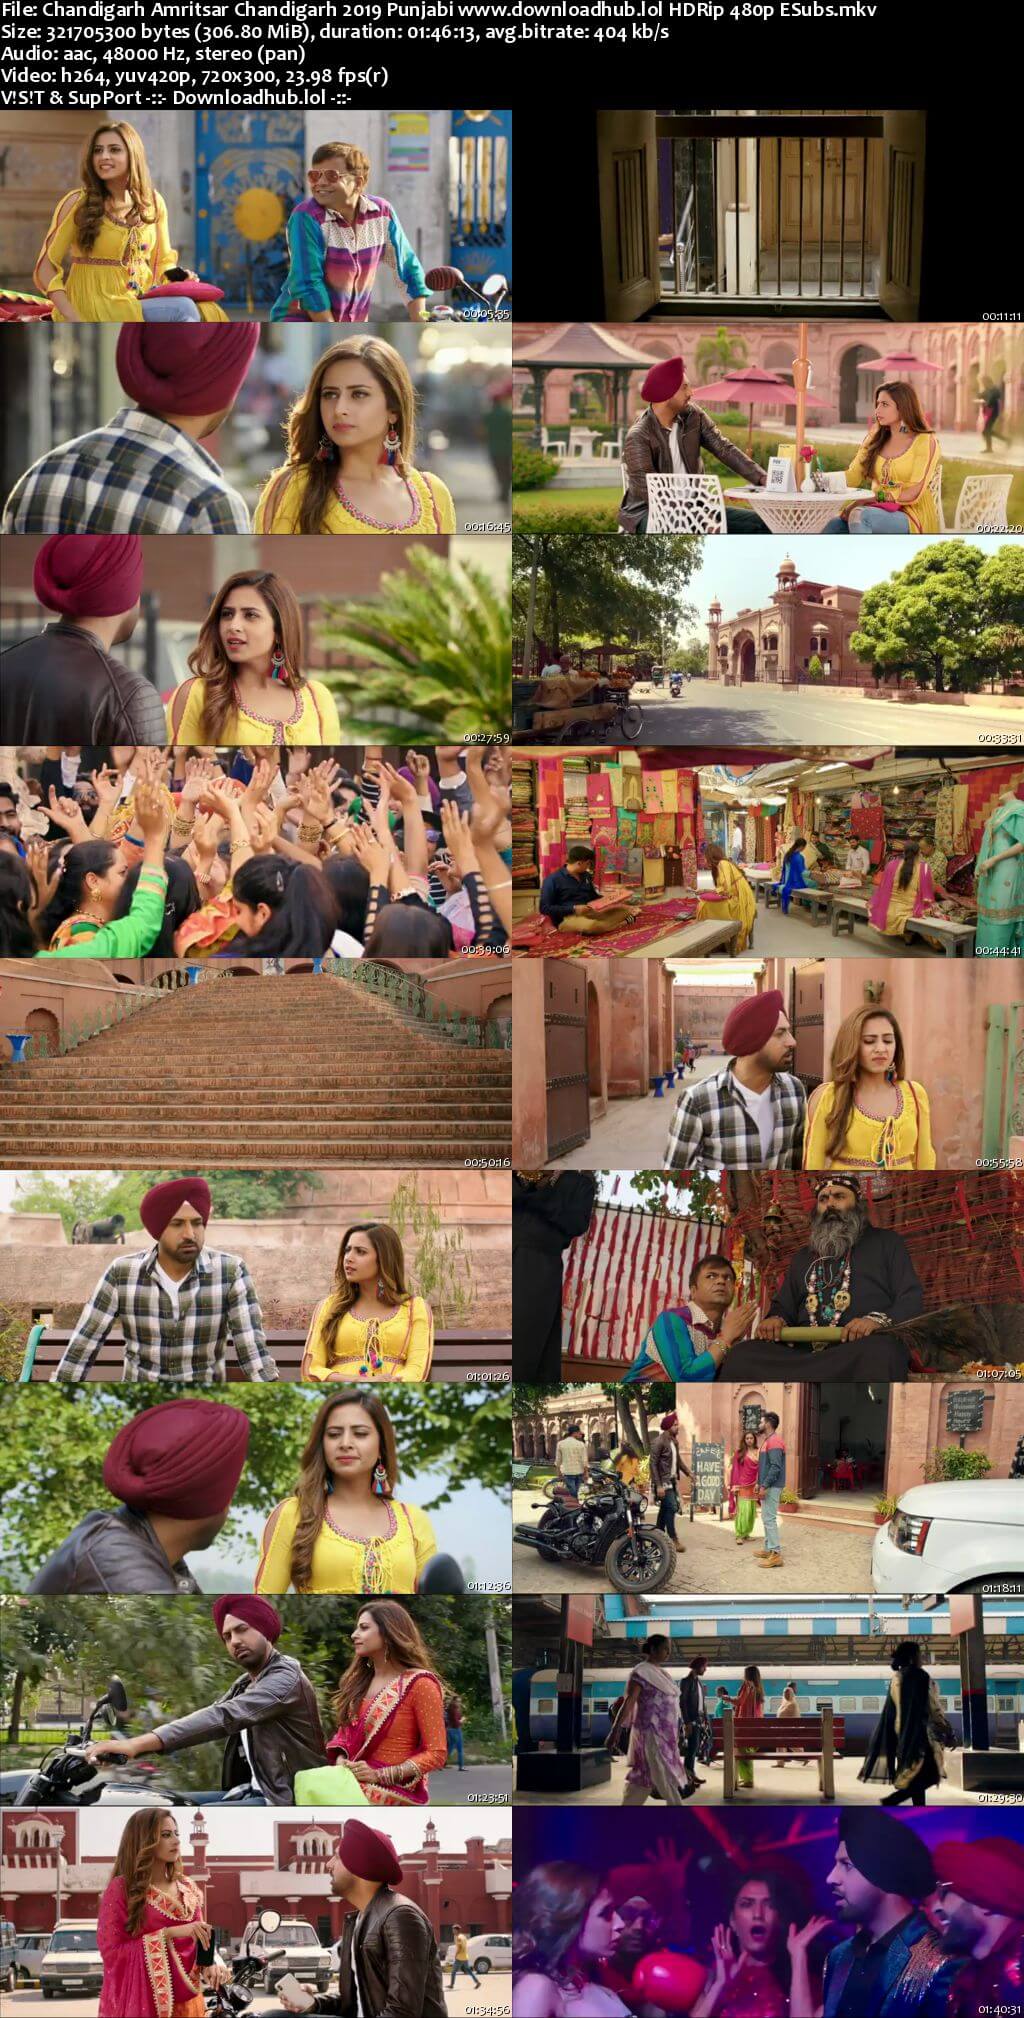 Chandigarh Amritsar Chandigarh 2019 Punjabi 300MB HDRip 480p ESubs